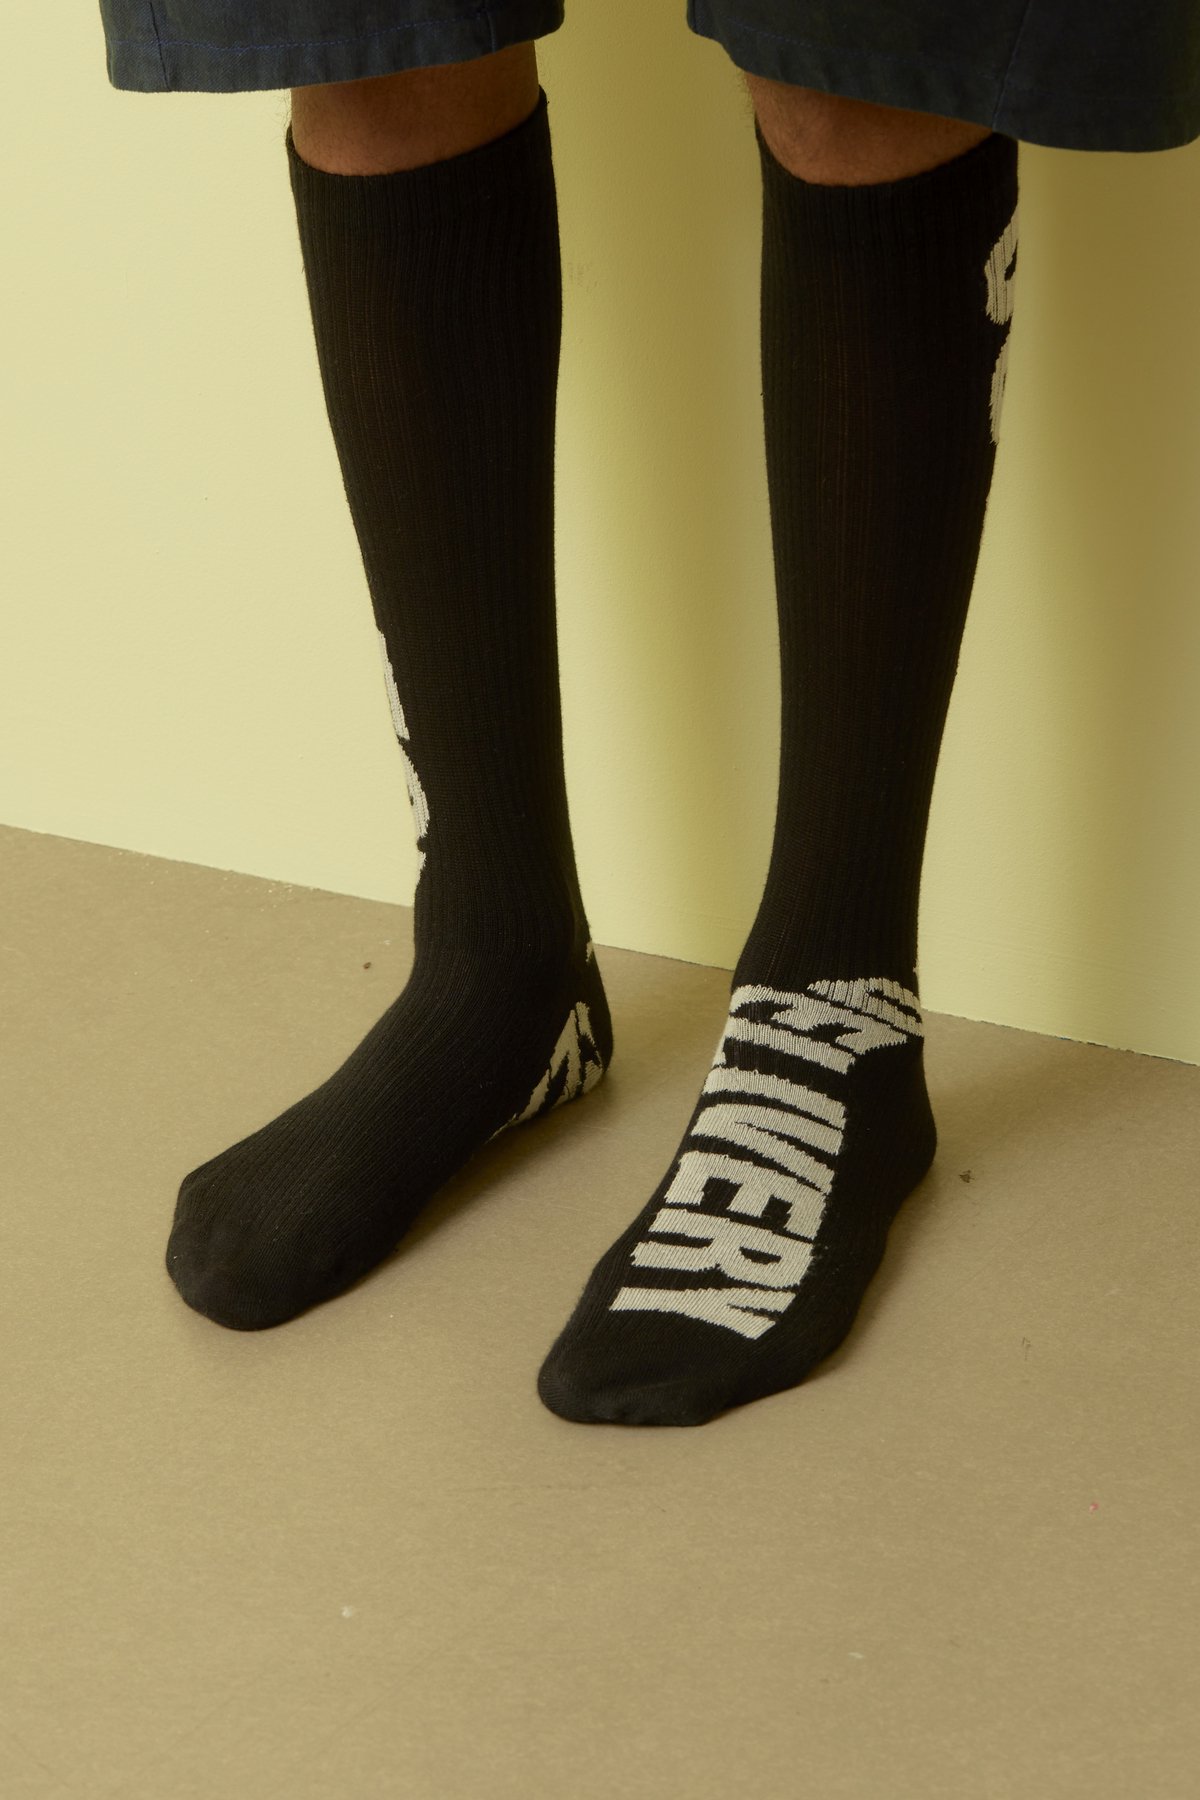 HENRIK VIBSKOV / Out for Delivery Socks Homme / Black OFD off White